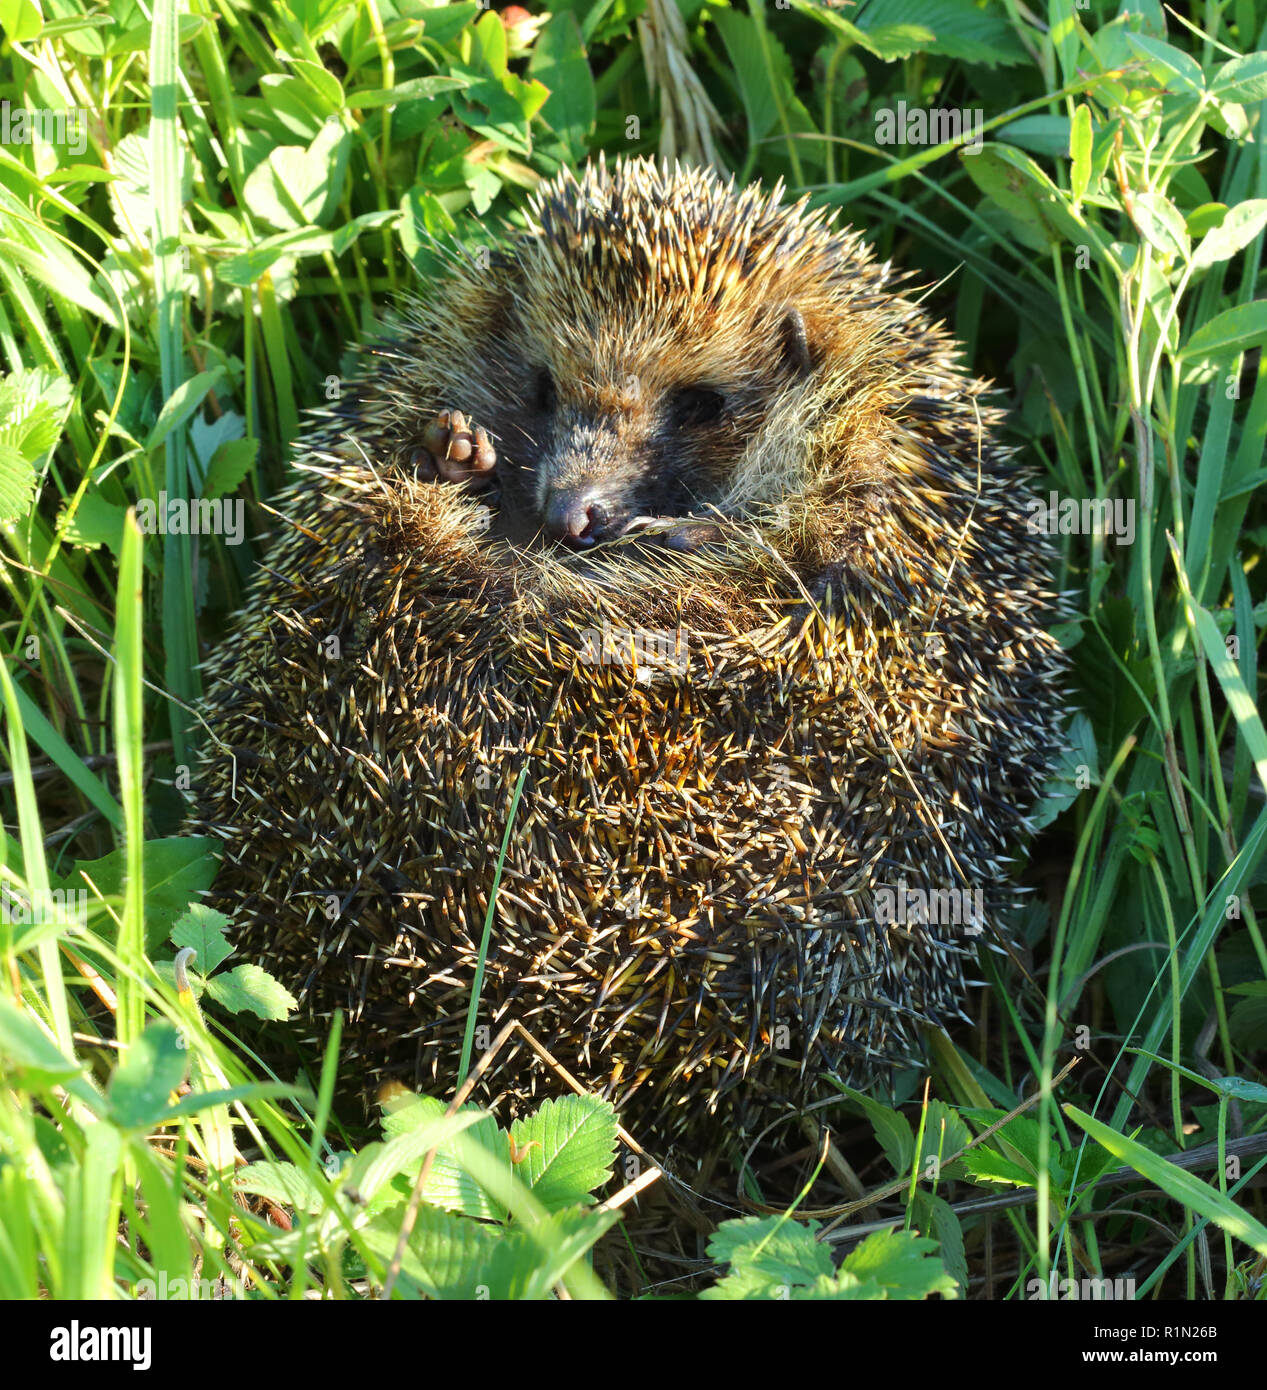 Hedgehog lovée dans l'herbe Banque D'Images